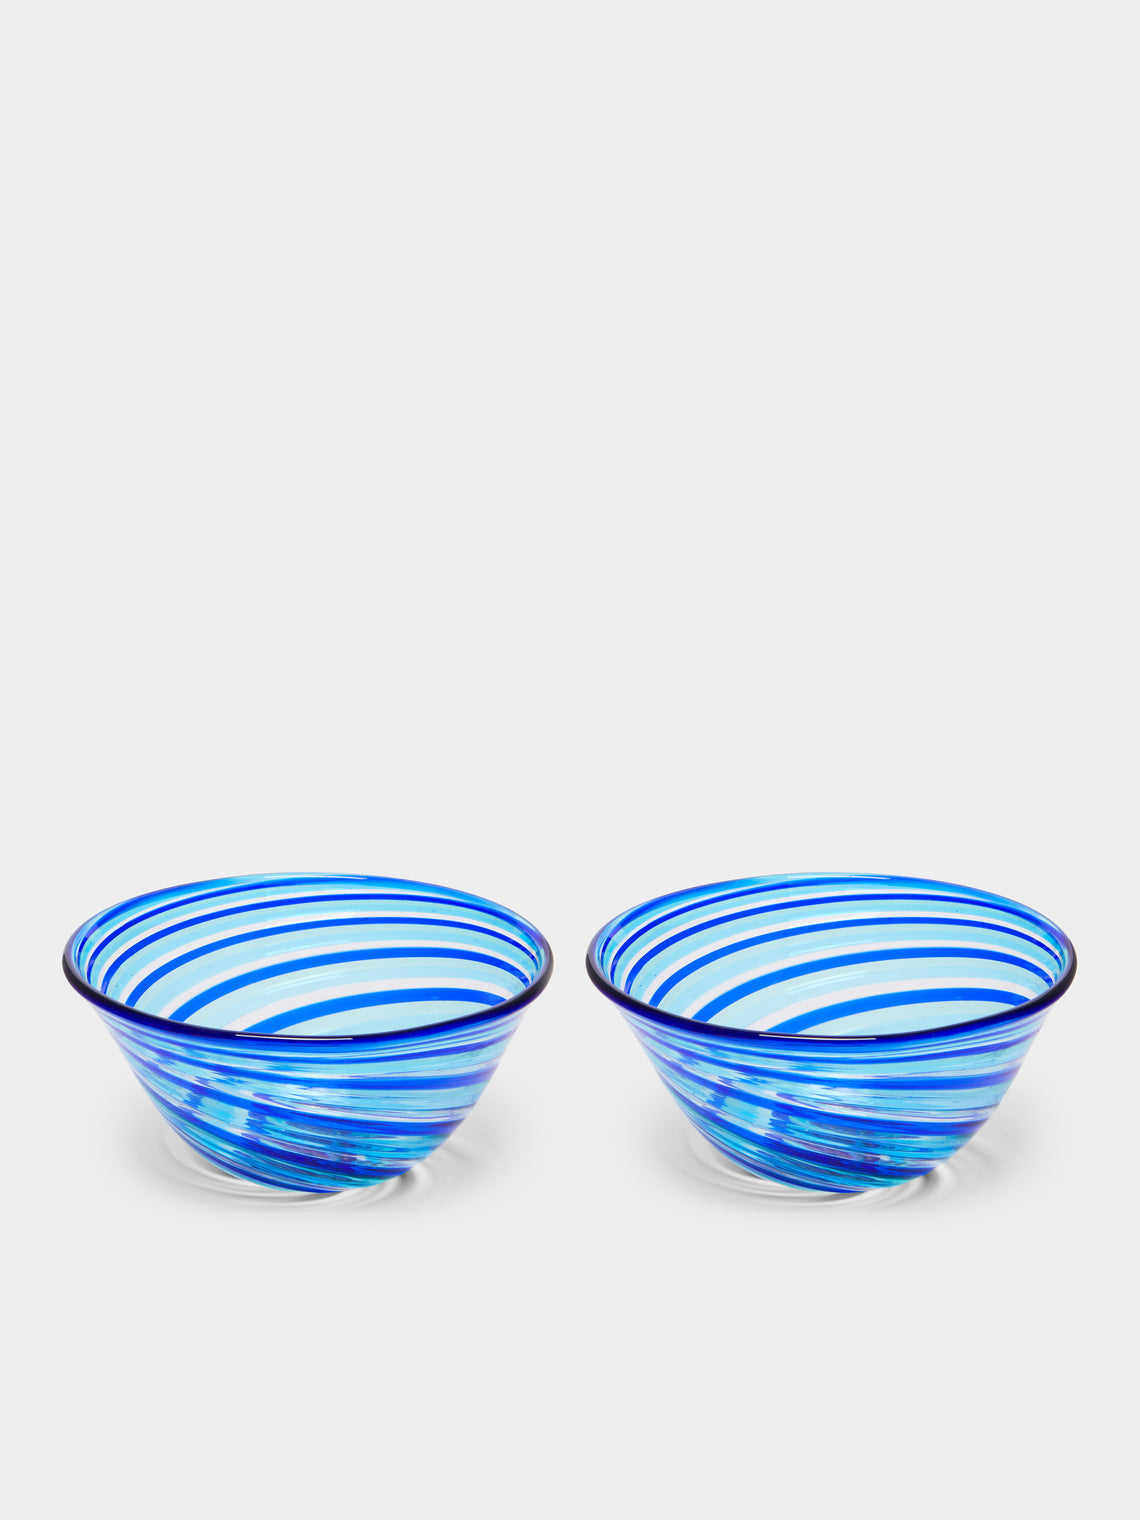 F&M Ballarin - Filigrana Hand-Blown Murano Glass Bowls (Set of 2) -  - ABASK